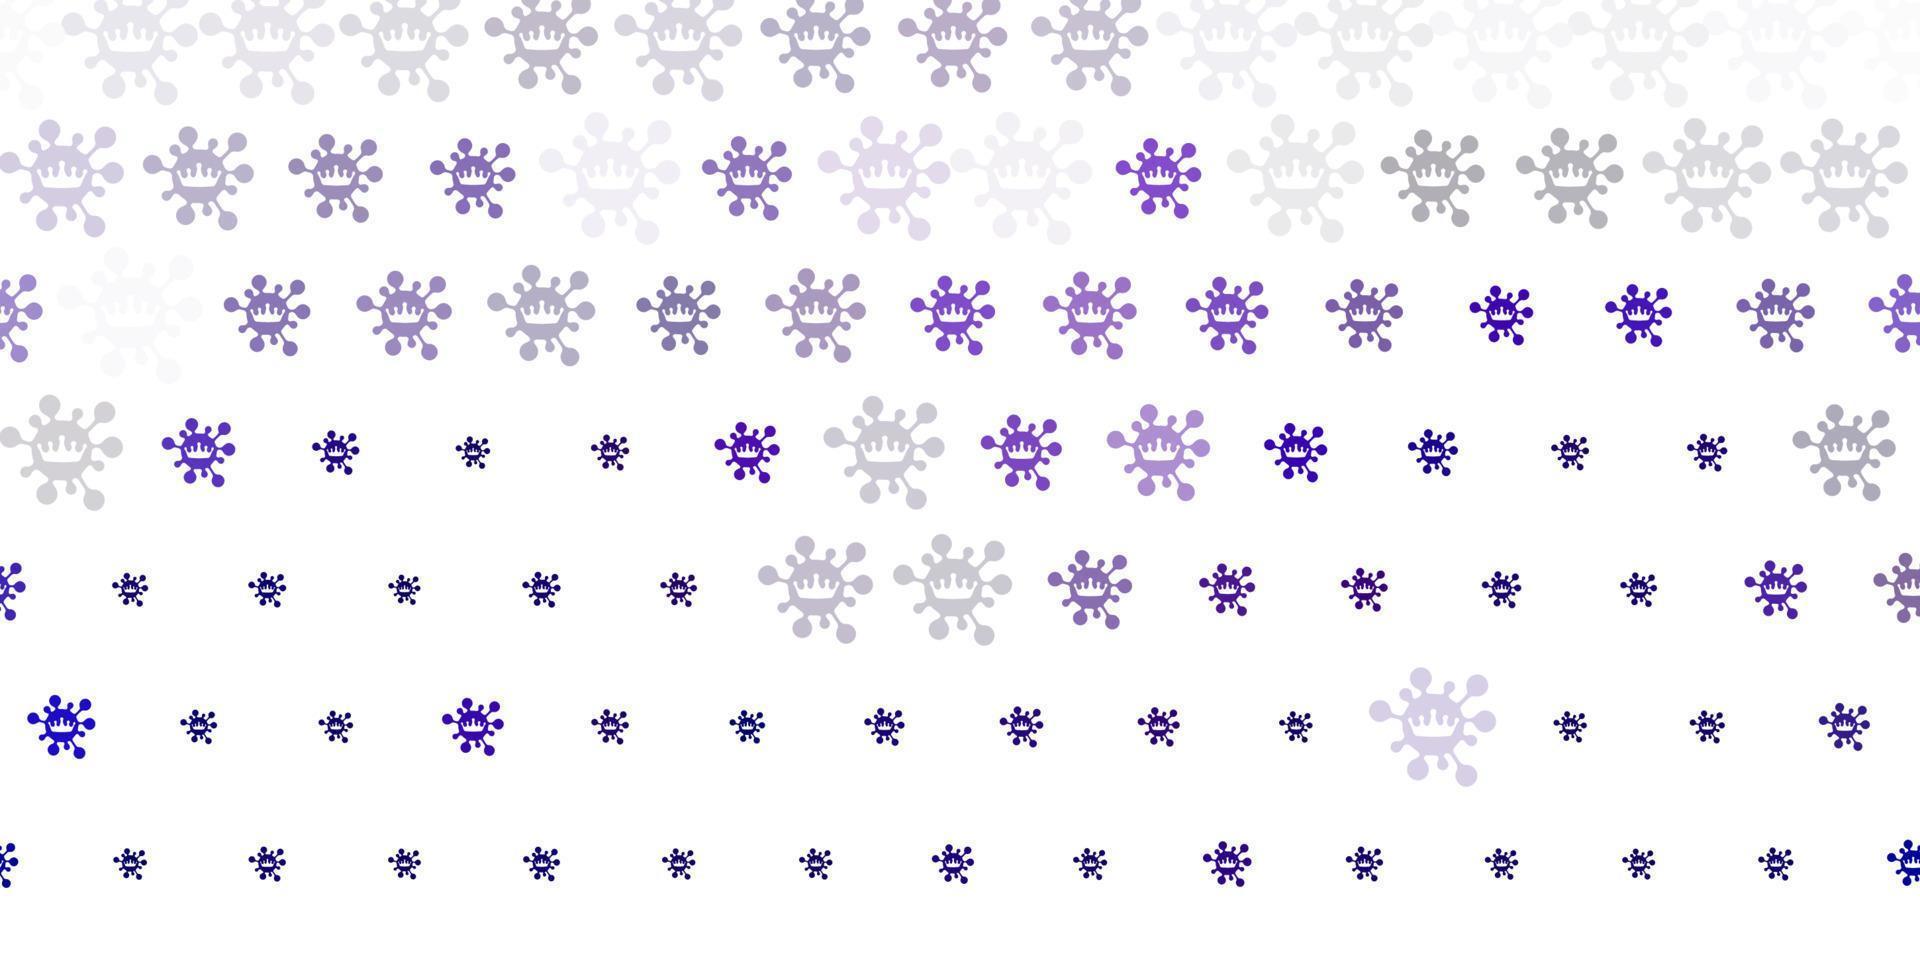 toile de fond de vecteur violet clair avec symboles de virus.